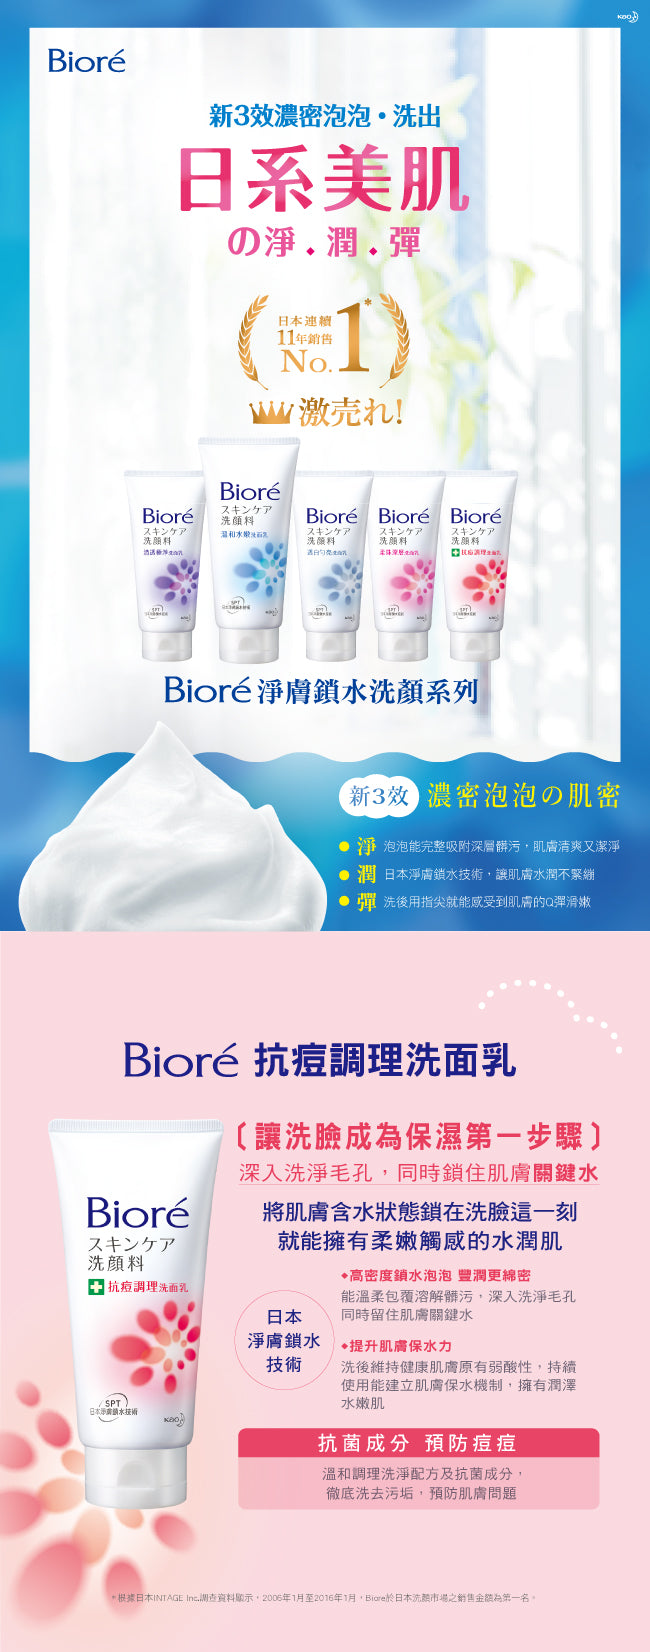 Kao - Bioré Face Wash Acne Care 130g